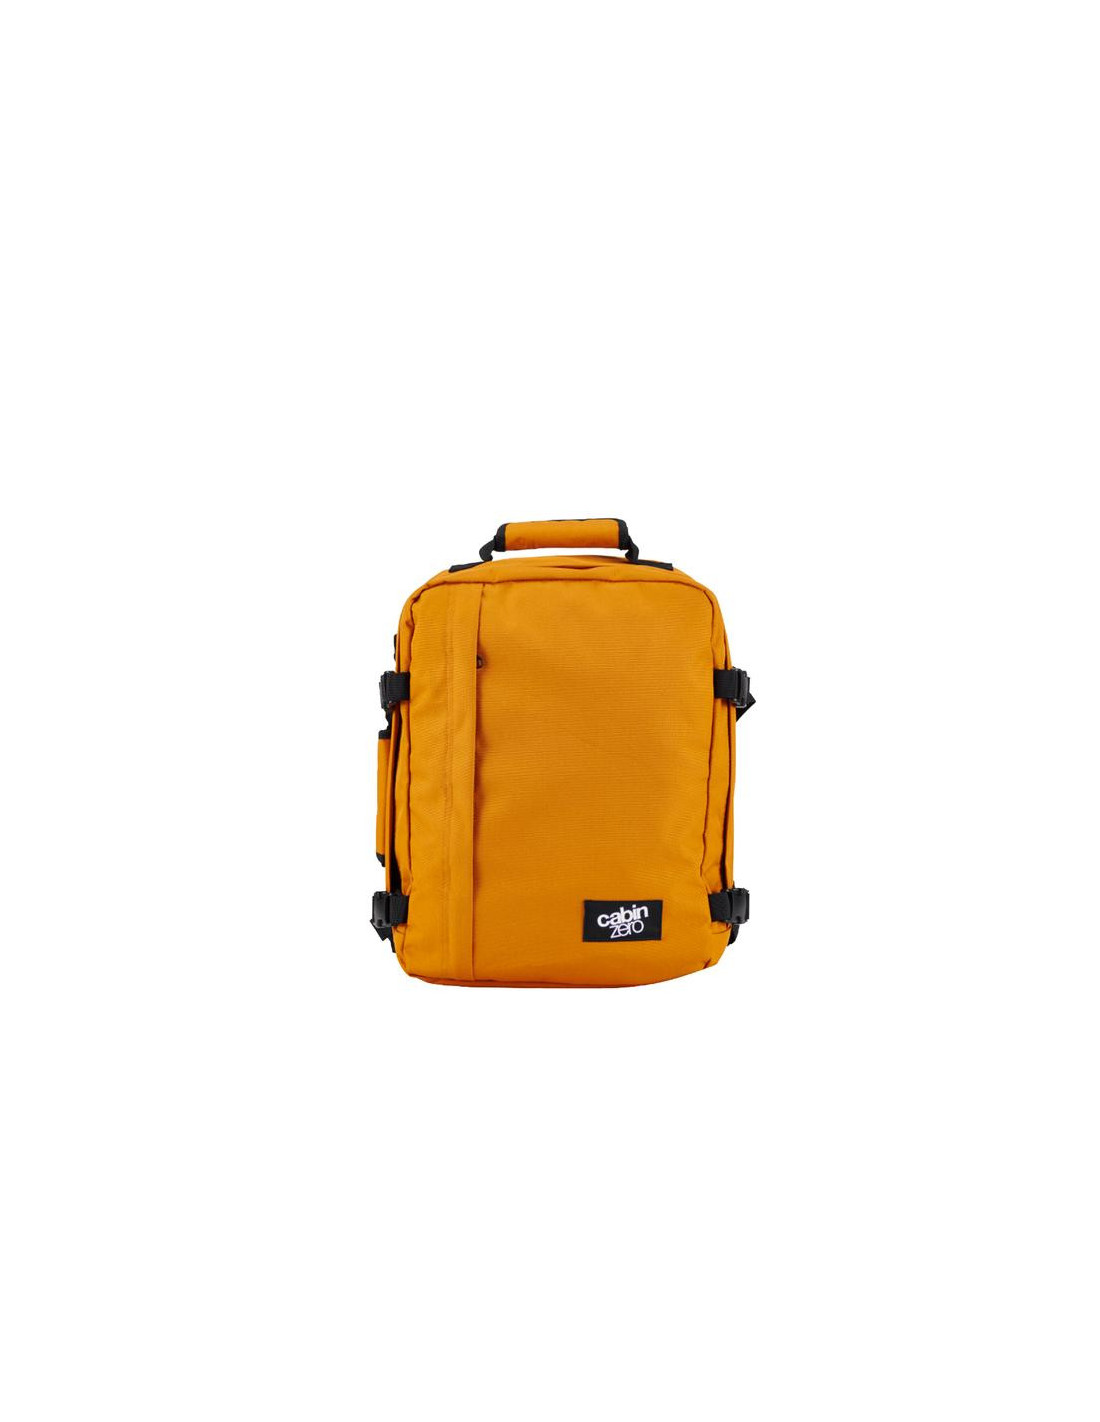 Mochila Classic Backpack 28L Orange Chill de Cabin Zero